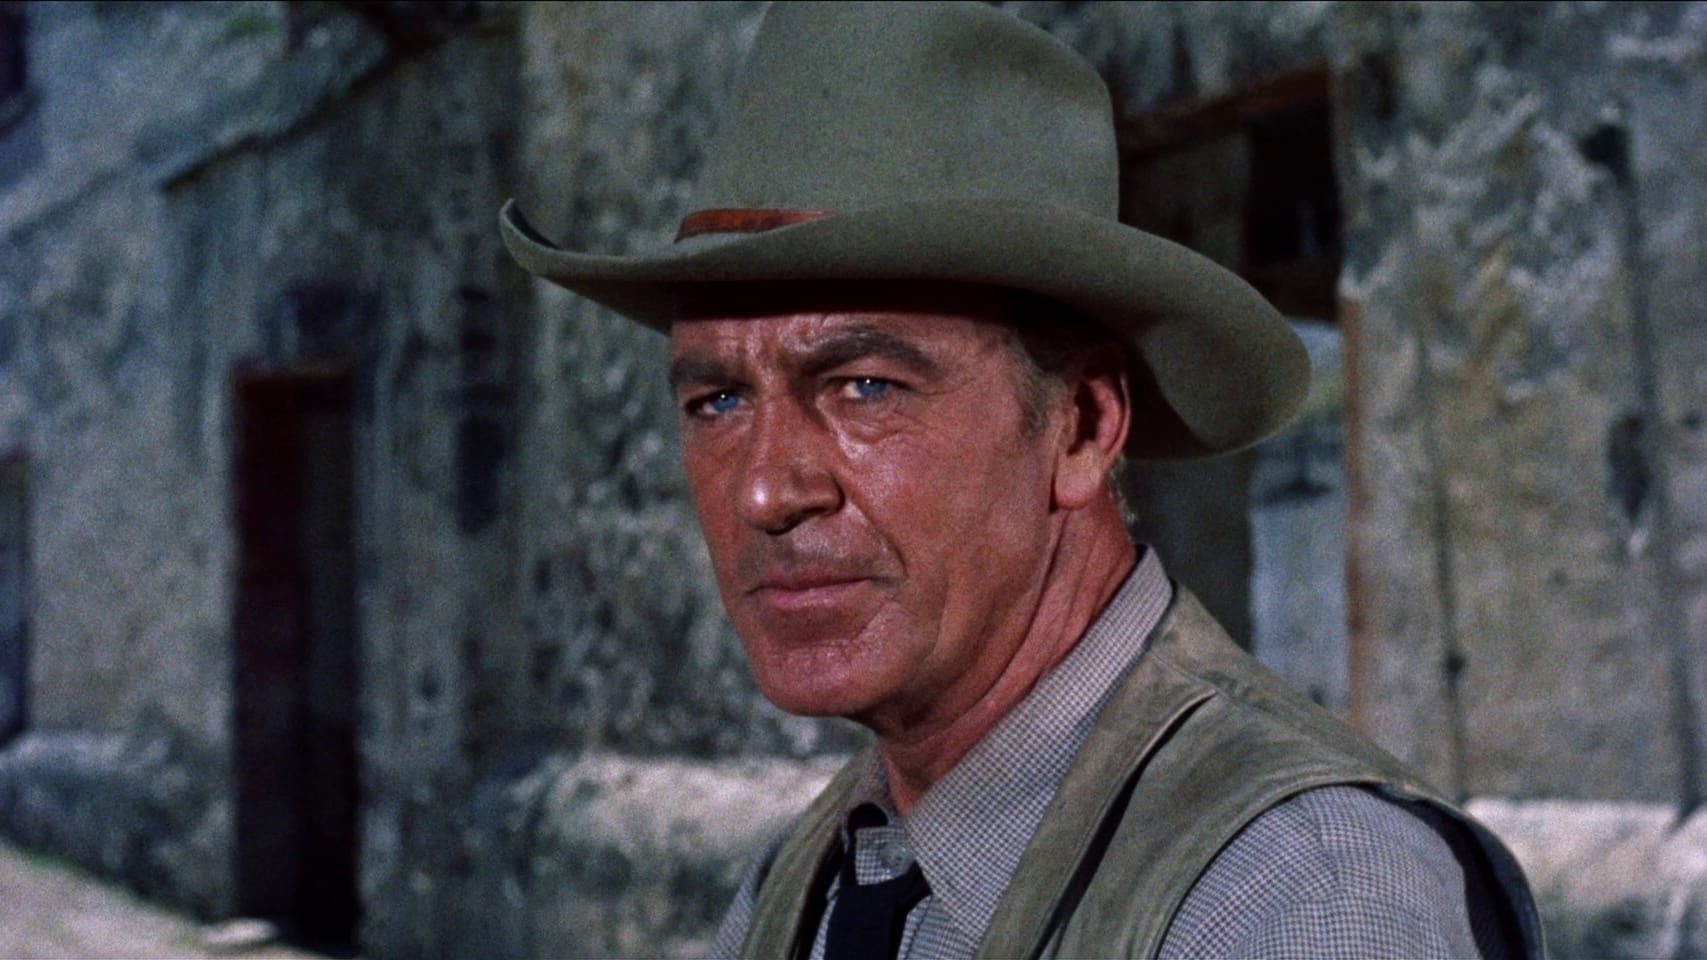 Ce soir à la télé : un grand western qui a valu à Gary Cooper une grave blessure